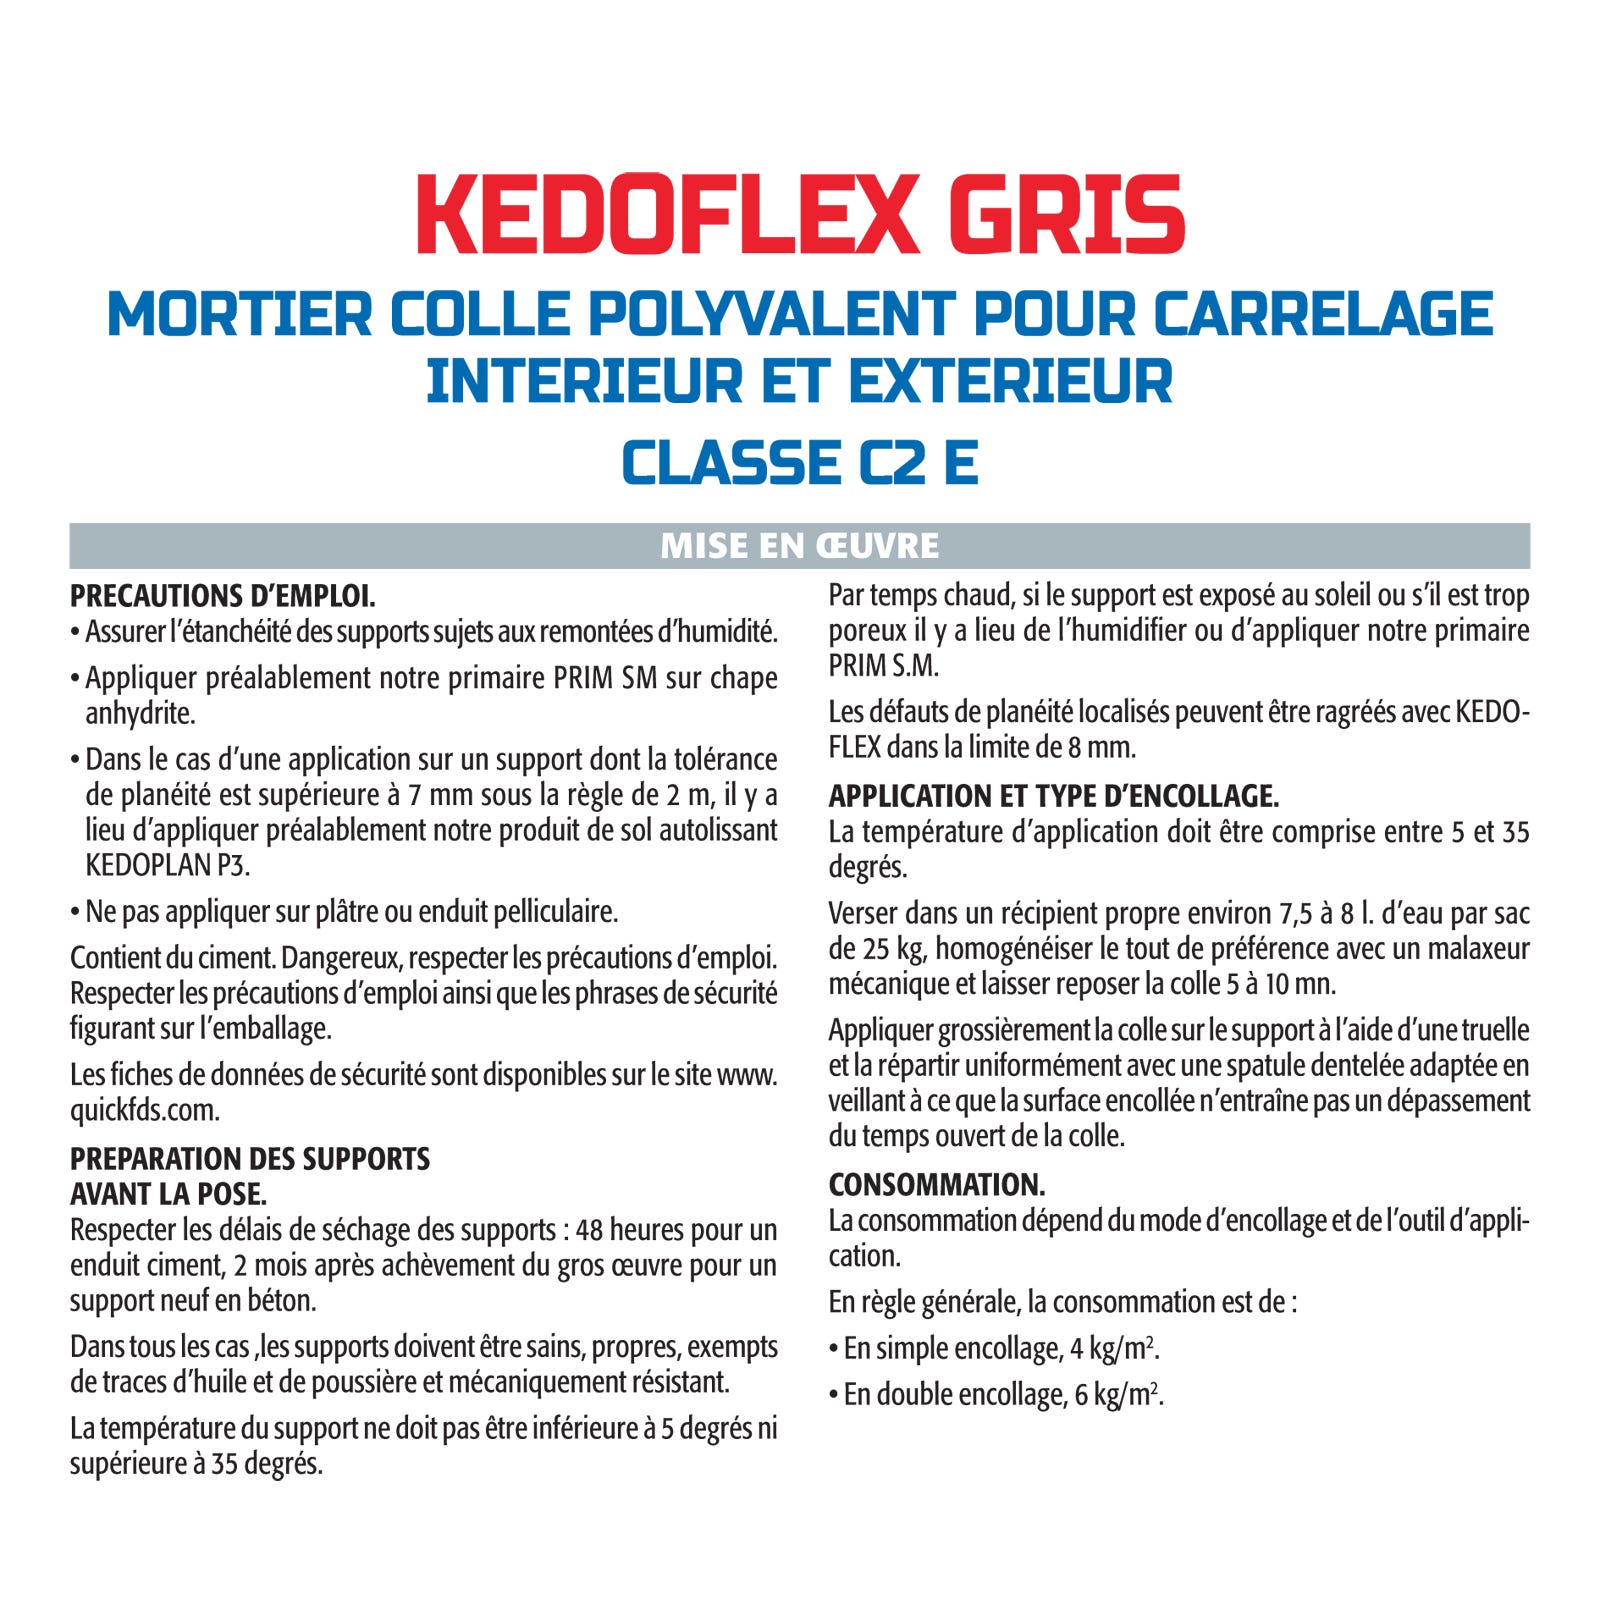 Mortier Colle Polyvalent pour Carrelage Kedoflex Gris Semin, Intérieur/Extérieur, sac de 25 kg 3